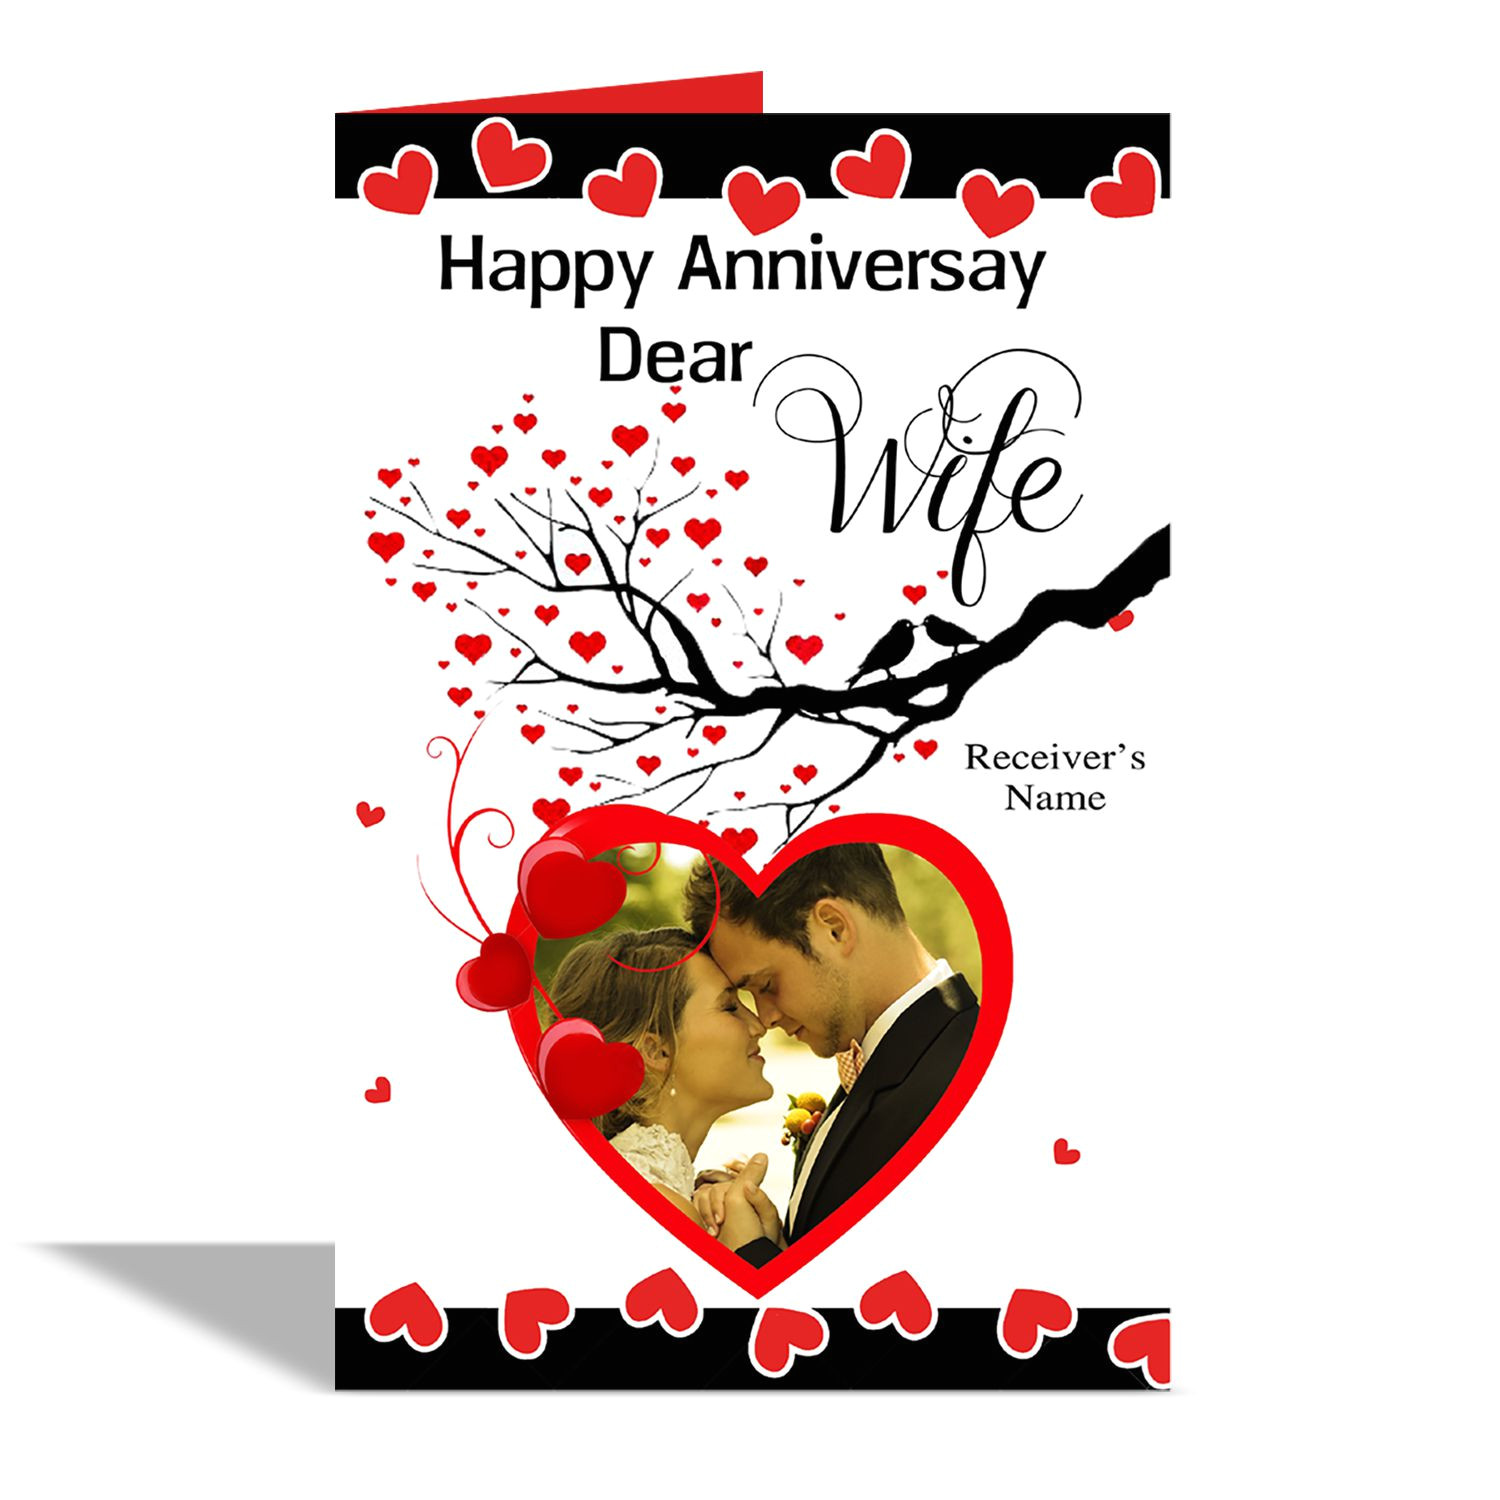 alwaysgift happy anniversary dear wife sdl577996864 1 7f300 jpg